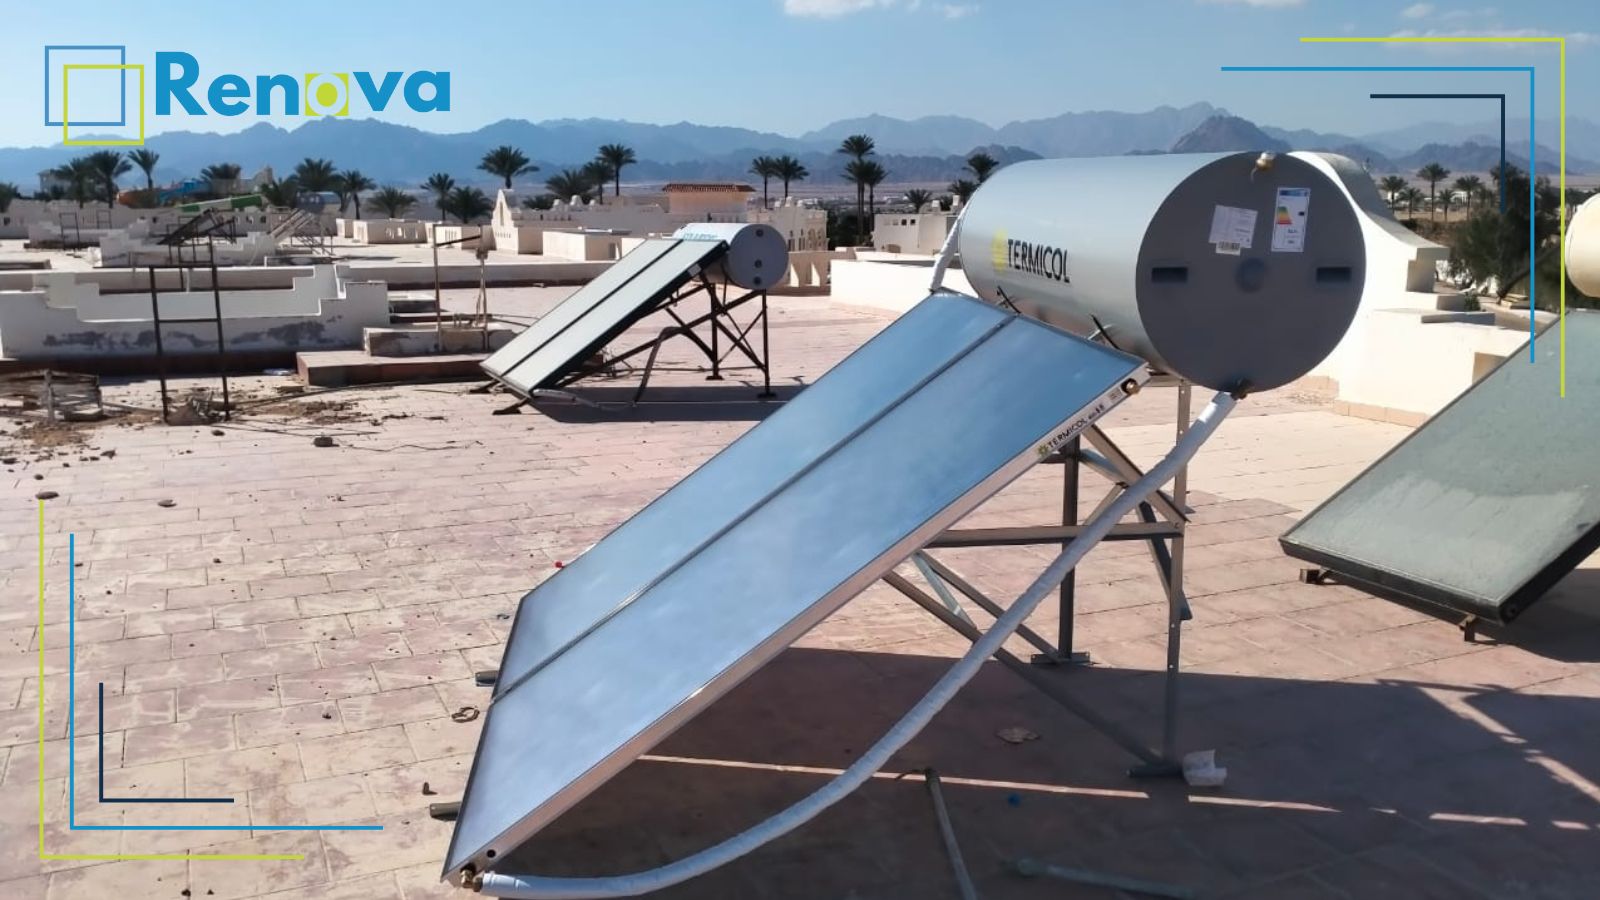 احد عملاء شركة رينوفا الوكيل لسخان المياه الشمسي تيرماكول الاسباني في مصر